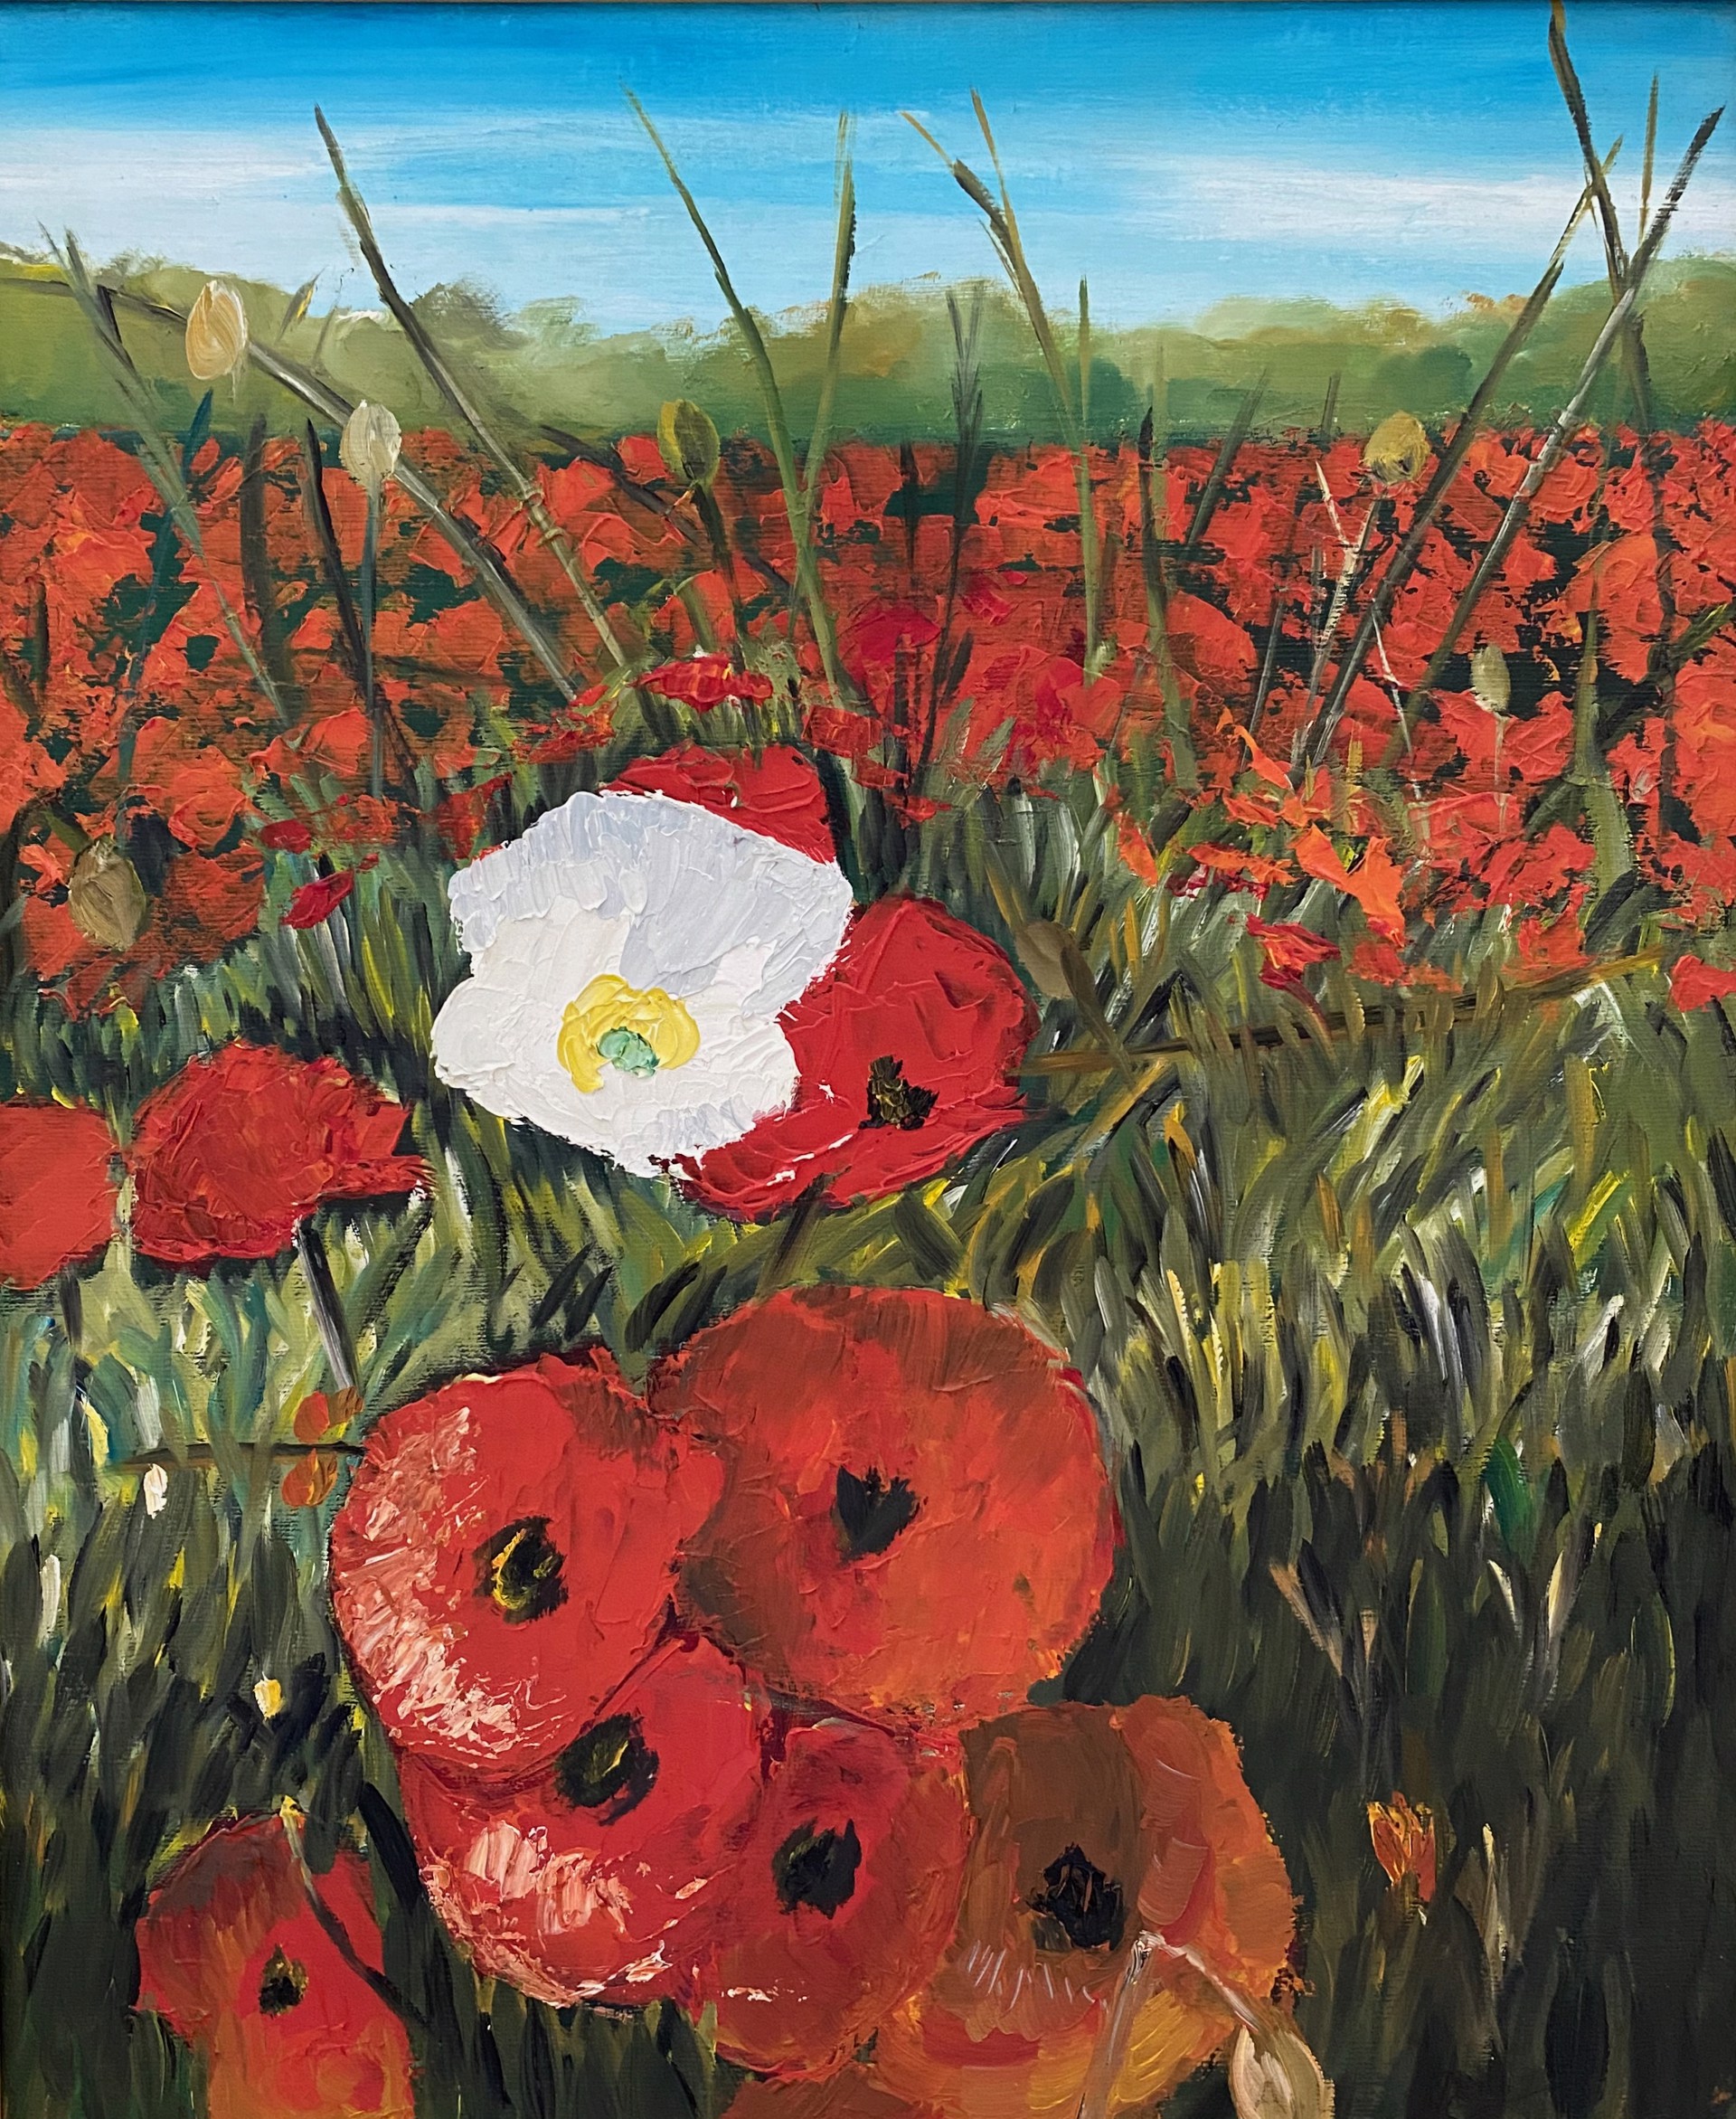 Poppy Flowers, Hauts-de-France by Anne-Lise Merchant